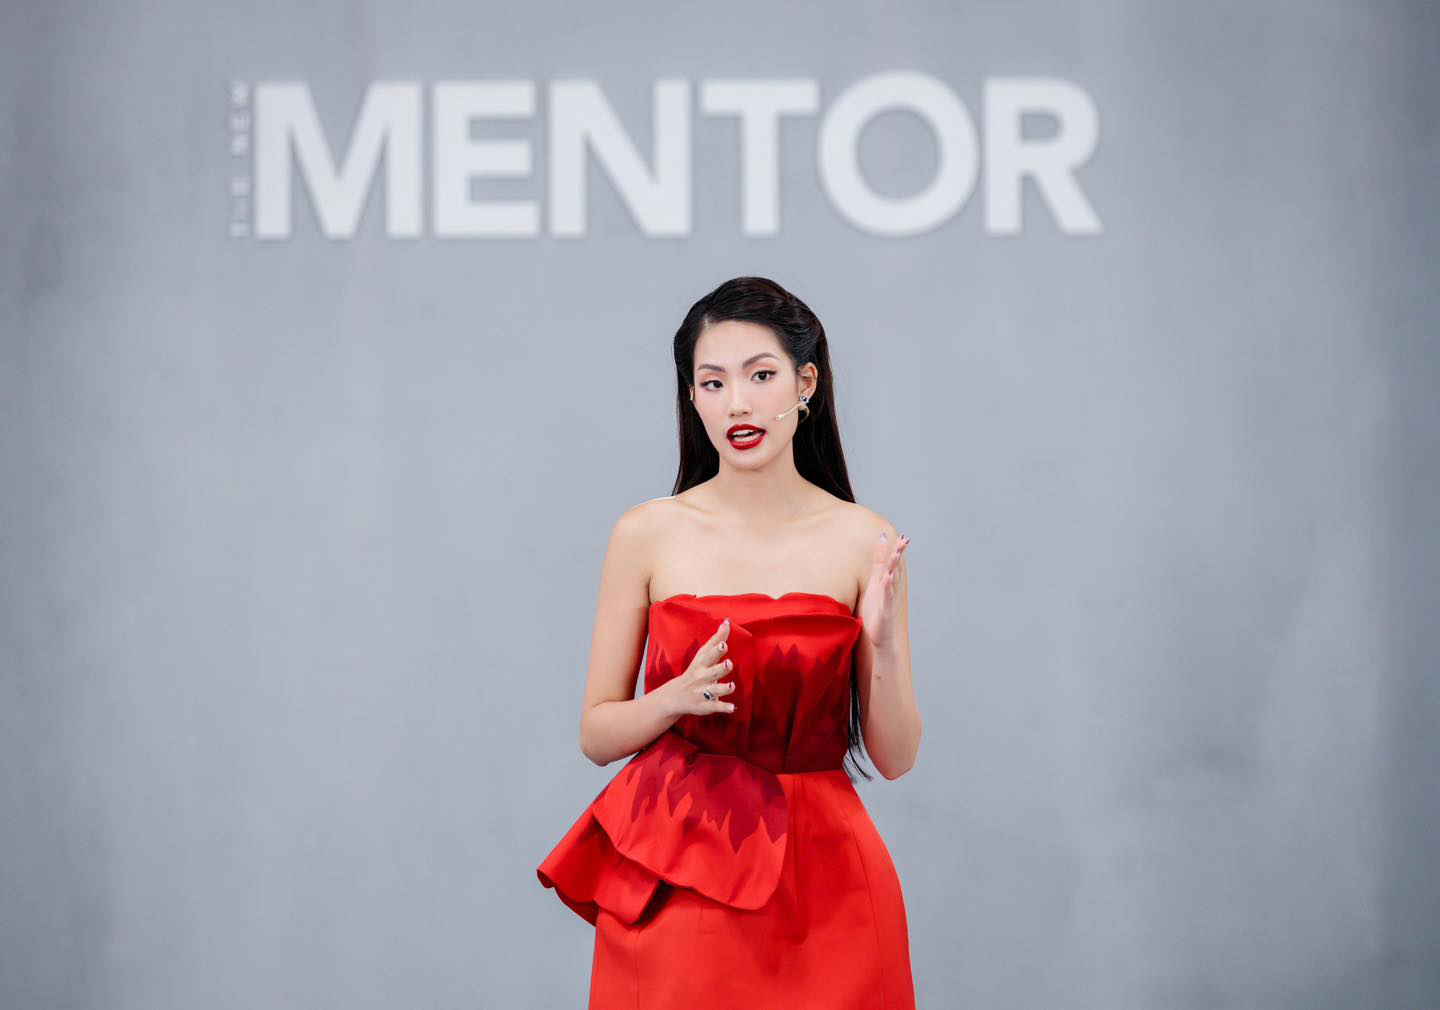 Lâm Châu nhận 'gạch đá' vì thái độ 'lồi lõm' tại tập cuối 'The New Mentor'. Ảnh: The New Mentor